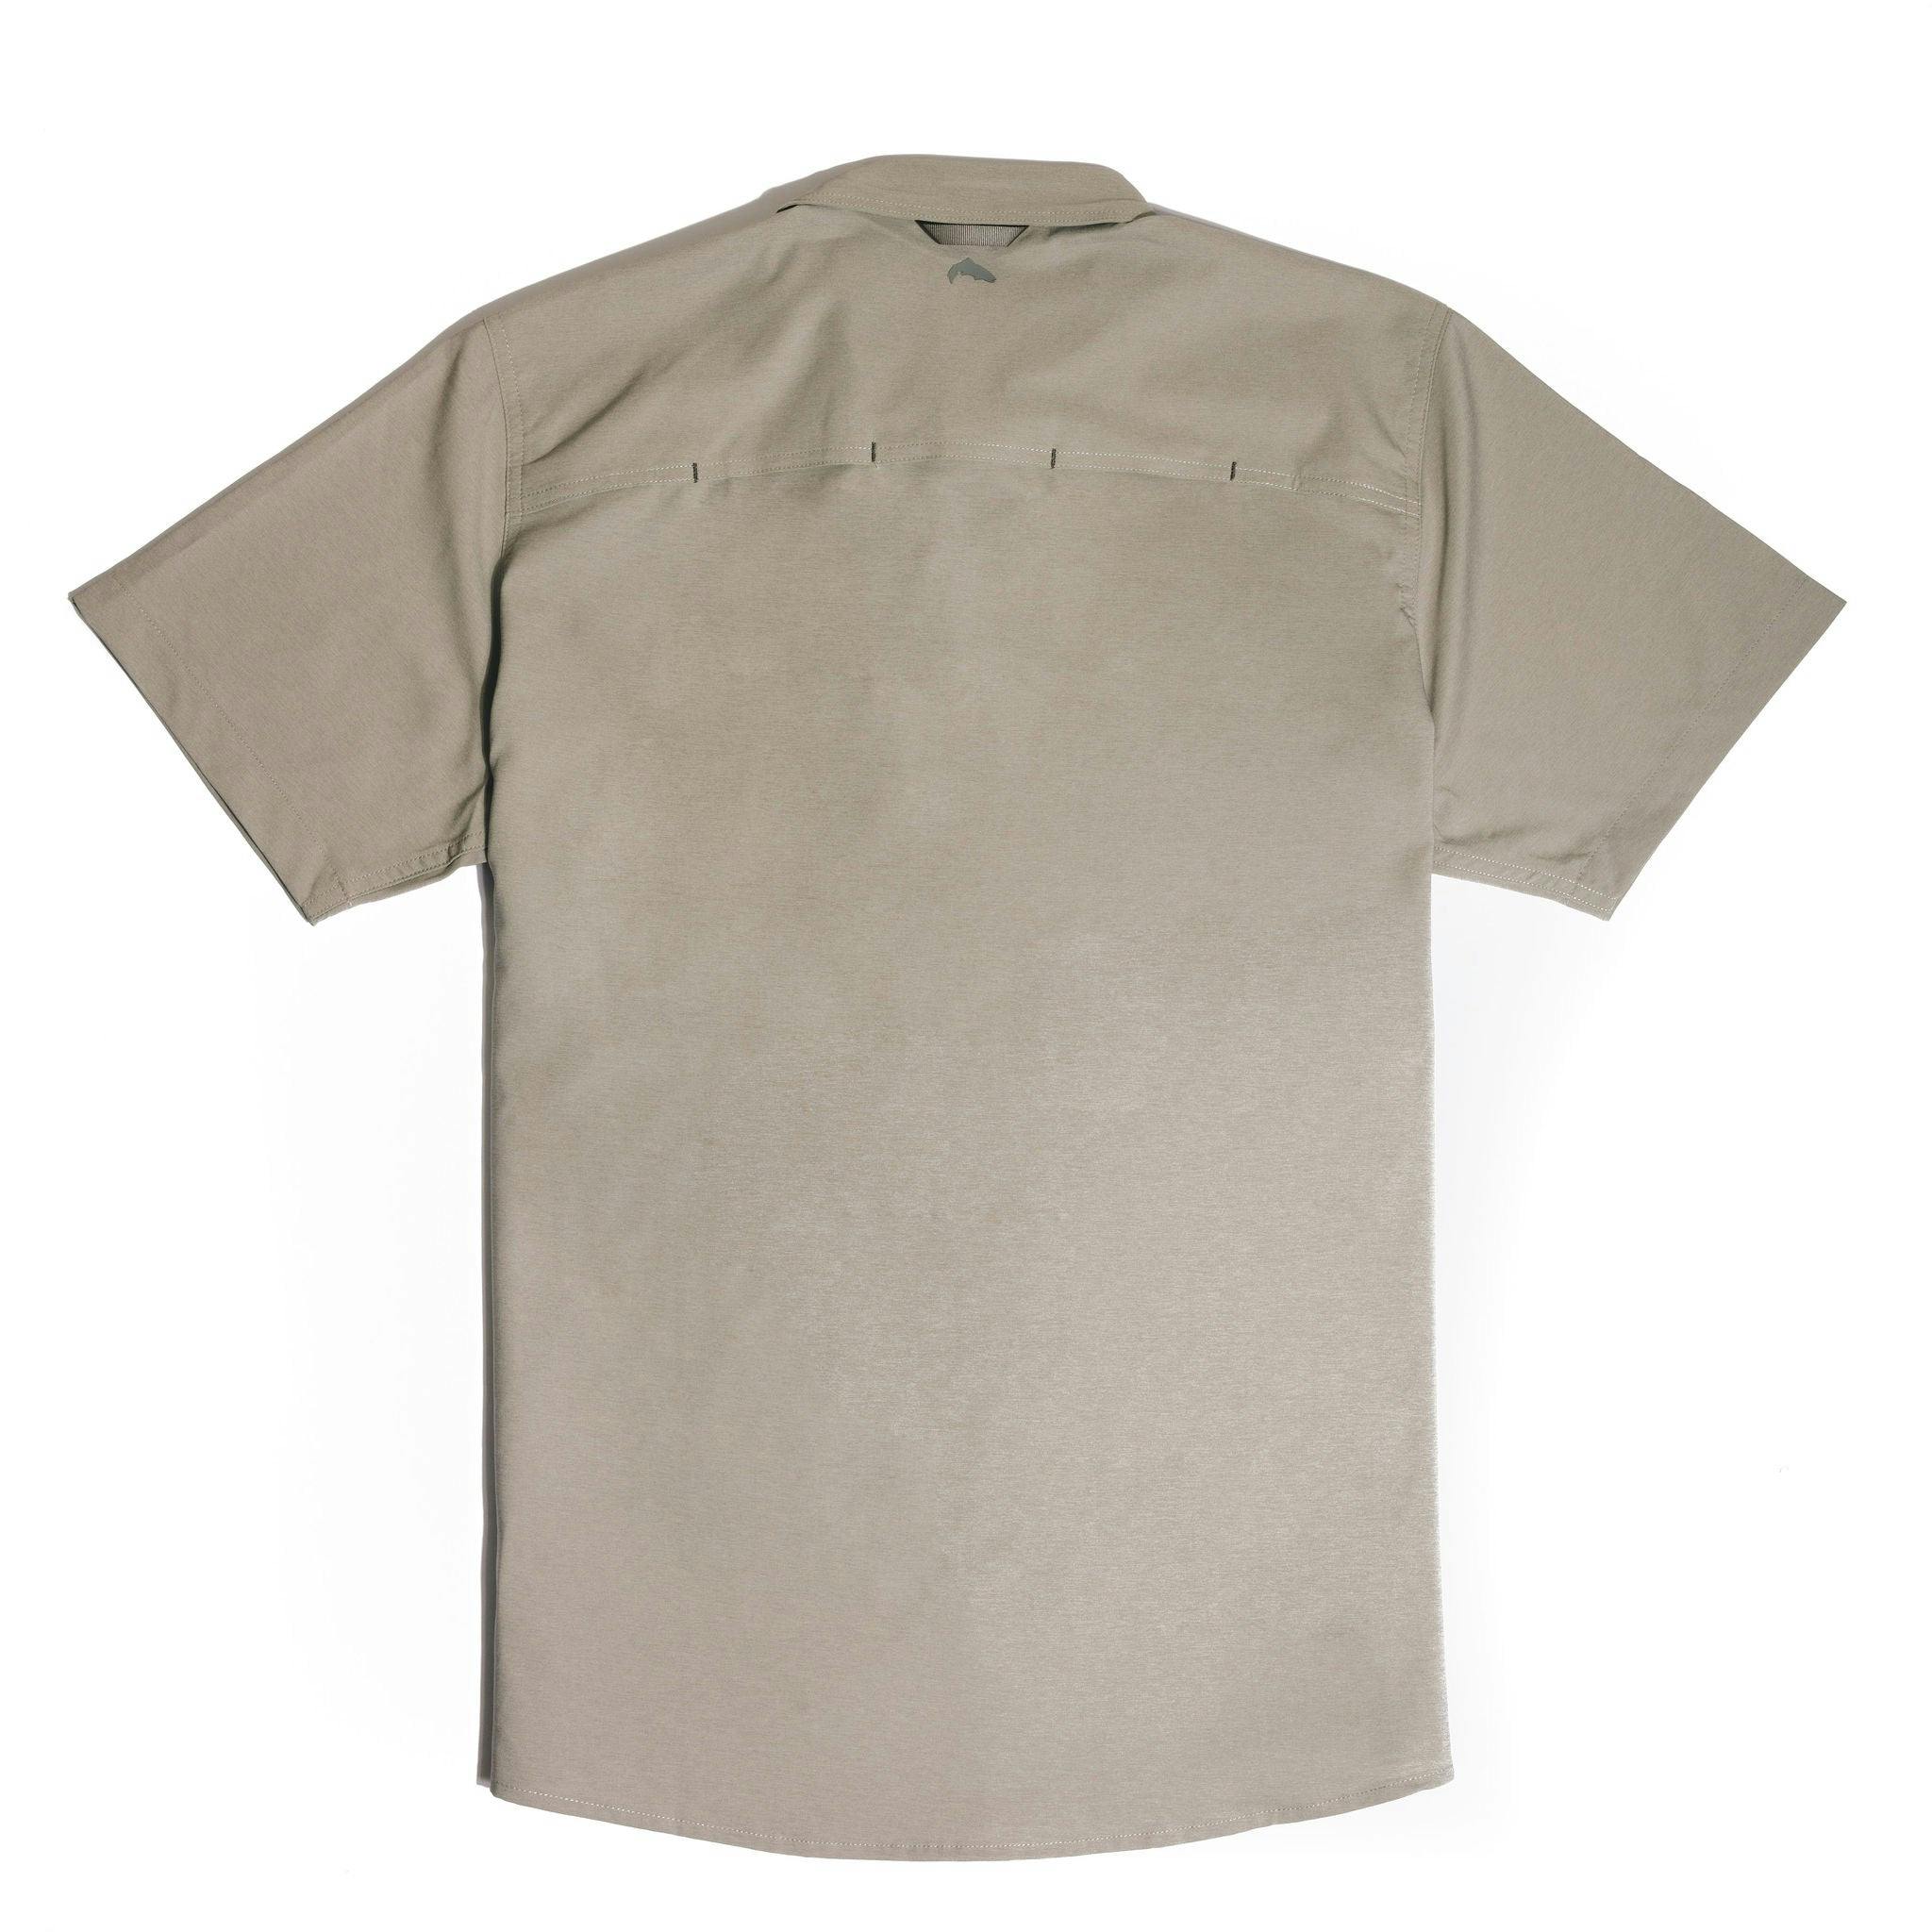 Sierra Nevada x Simms Challenger Short Sleeve Shirt - back view